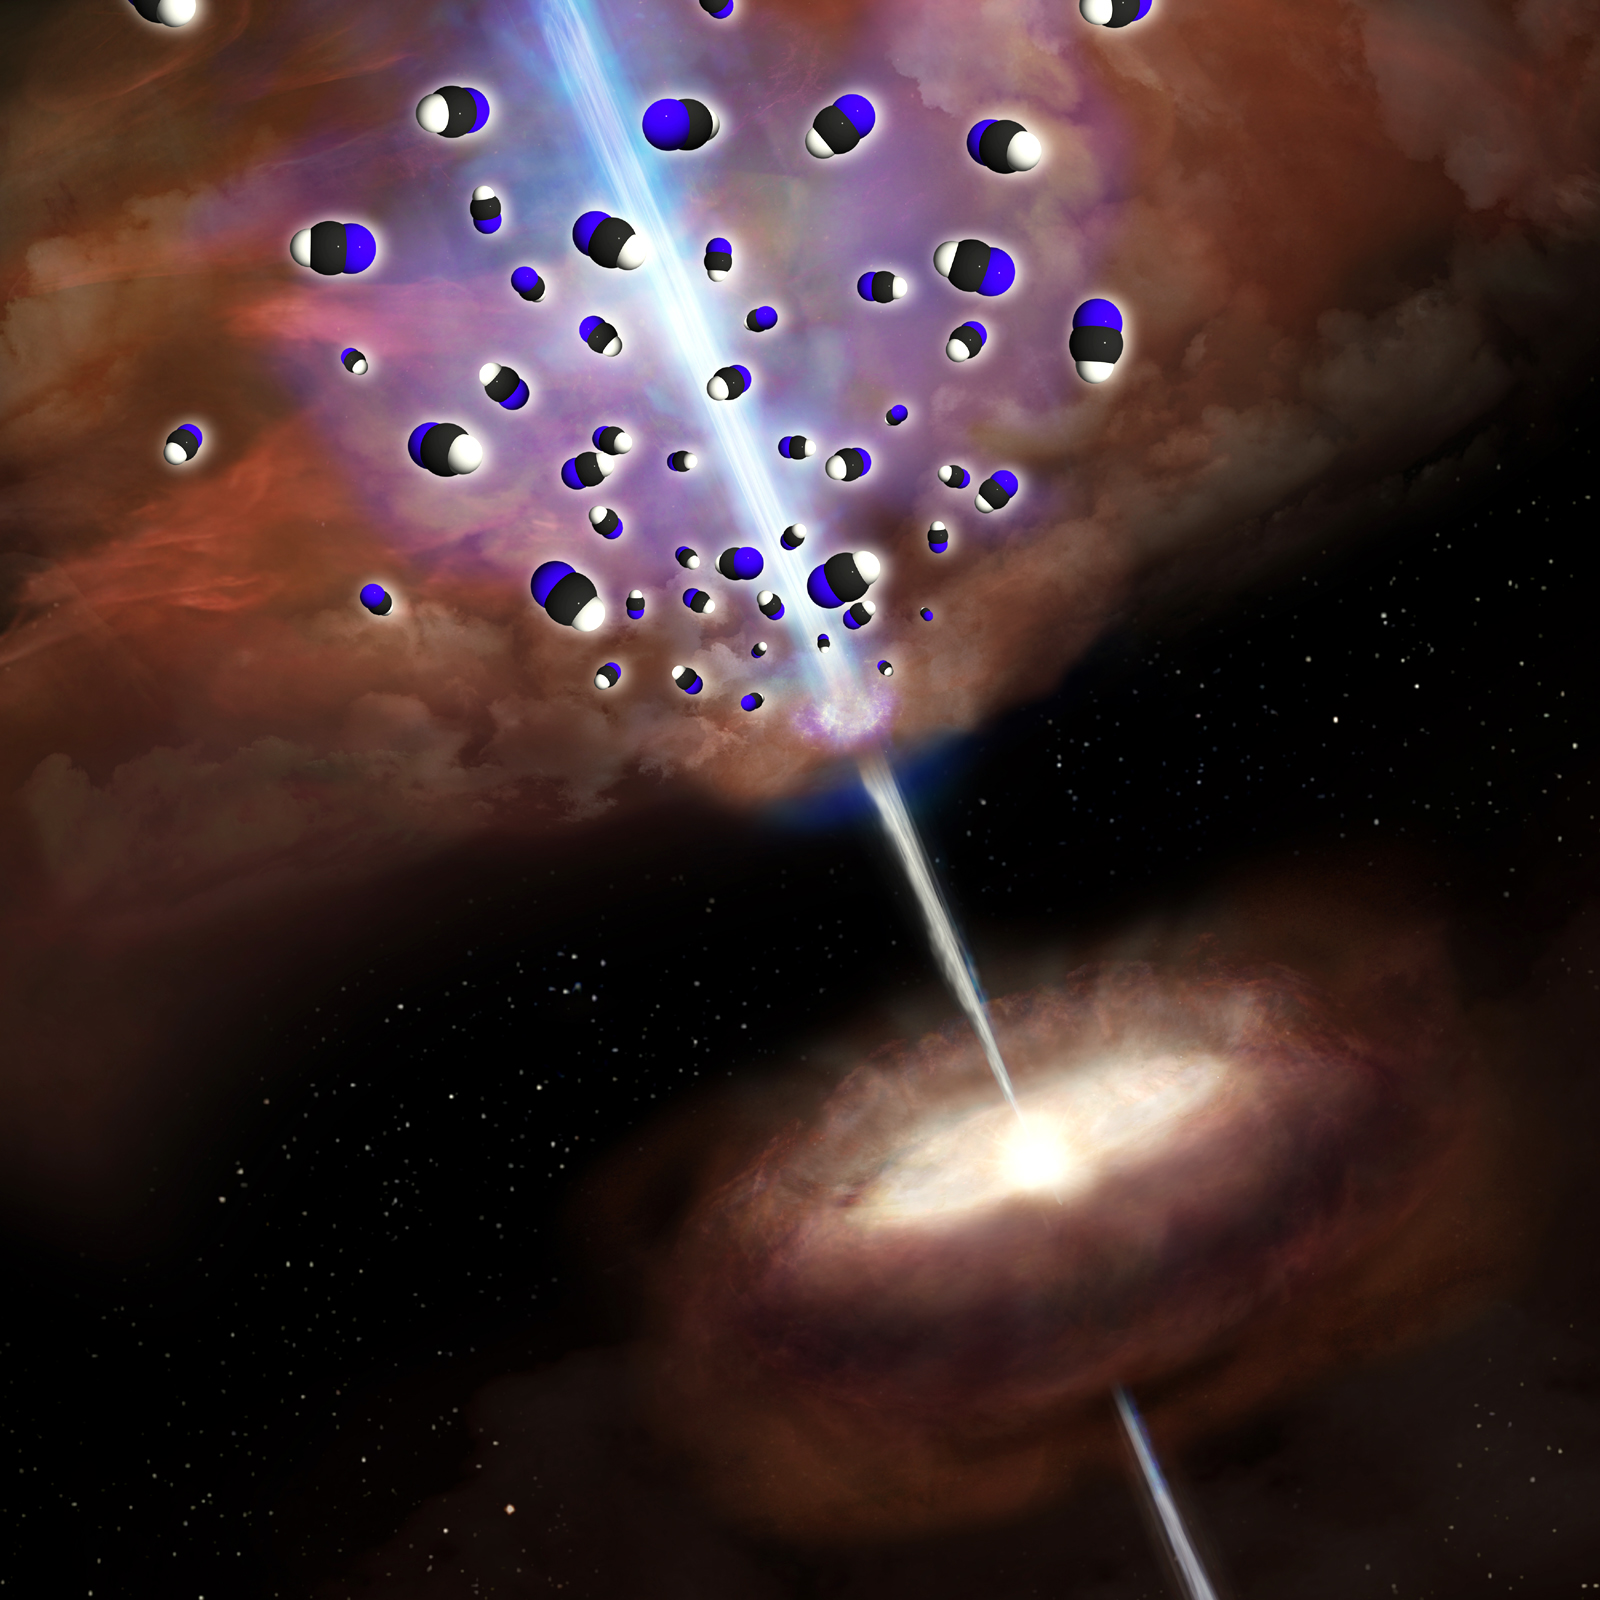 A szupernagy tömegű fekete lyuktól kiinduló jetek a csillagközi gáztömegeknek ütközve felhevítik a gázt